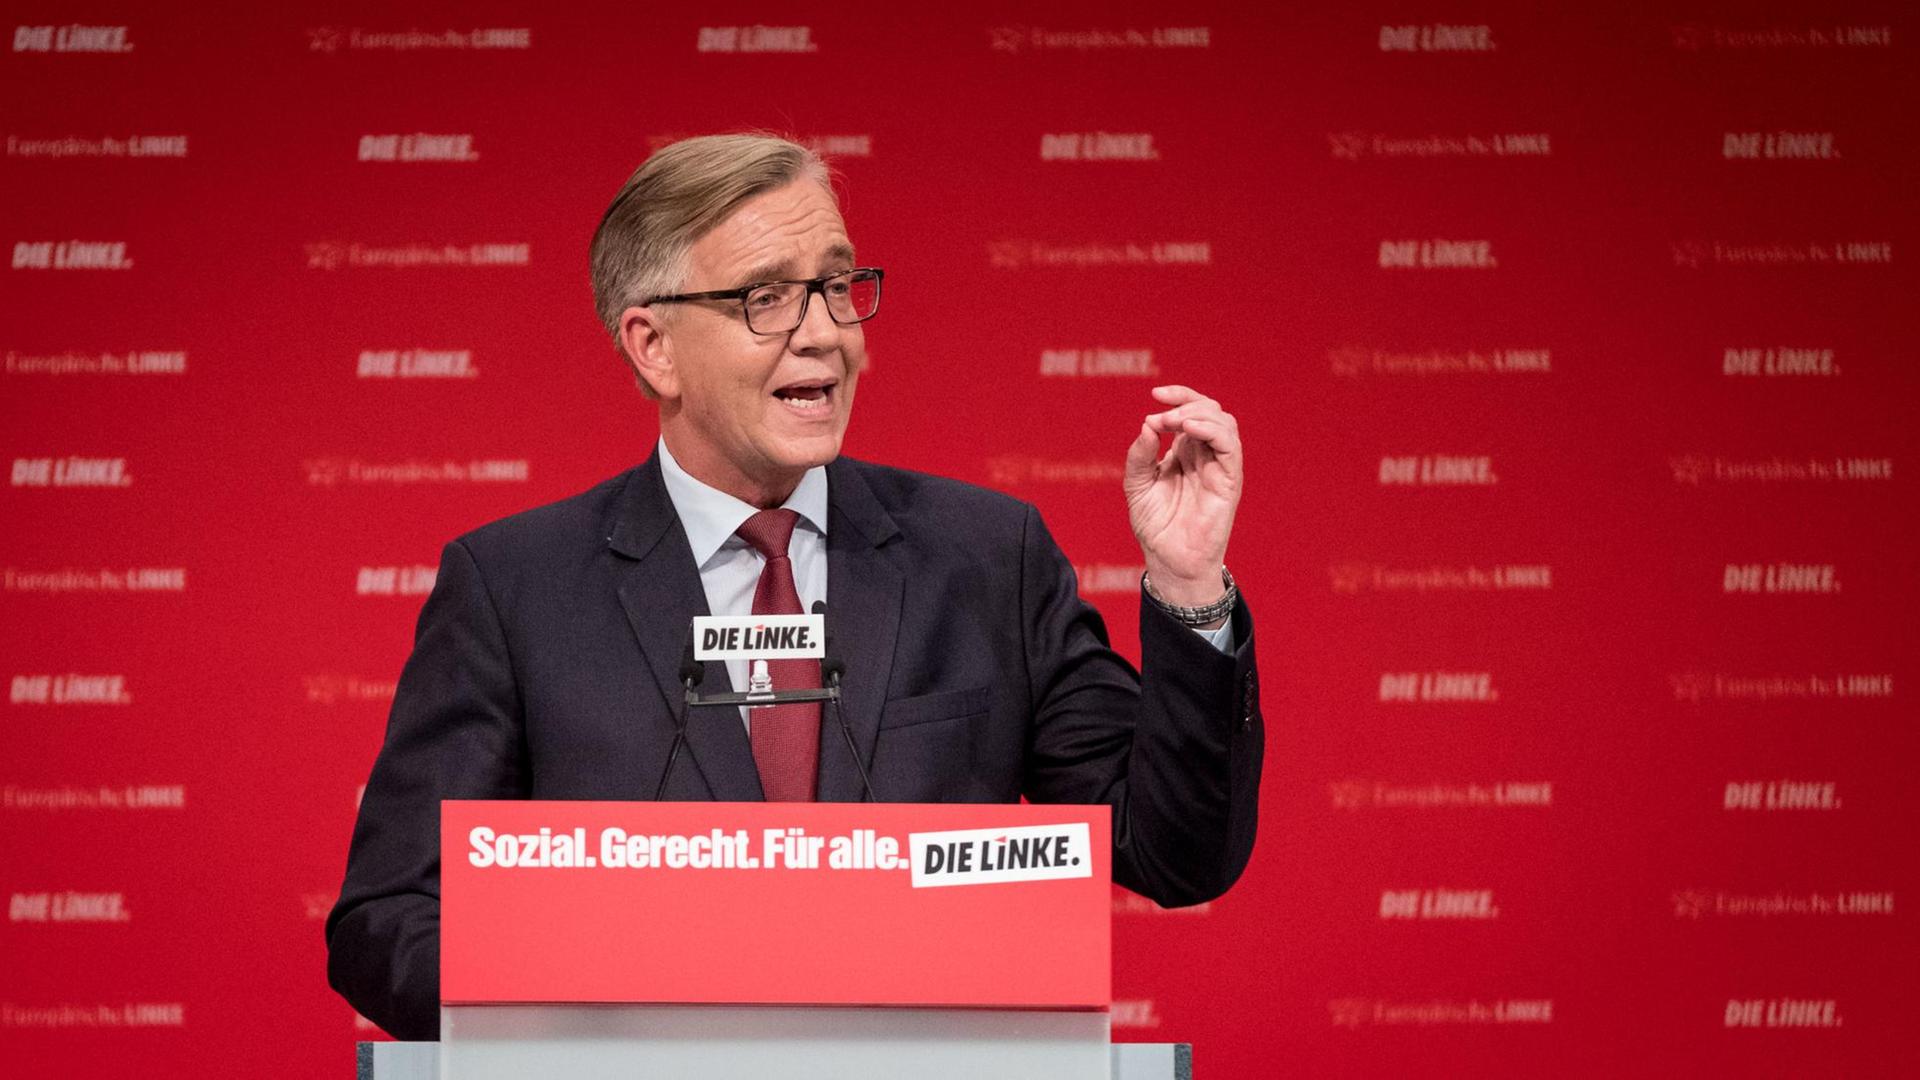 Der Spitzenkandidat der Linken für die Bundestagswahl 2017, Dietmar Bartsch, spricht während des Bundesparteitags der Linken in Hannover.